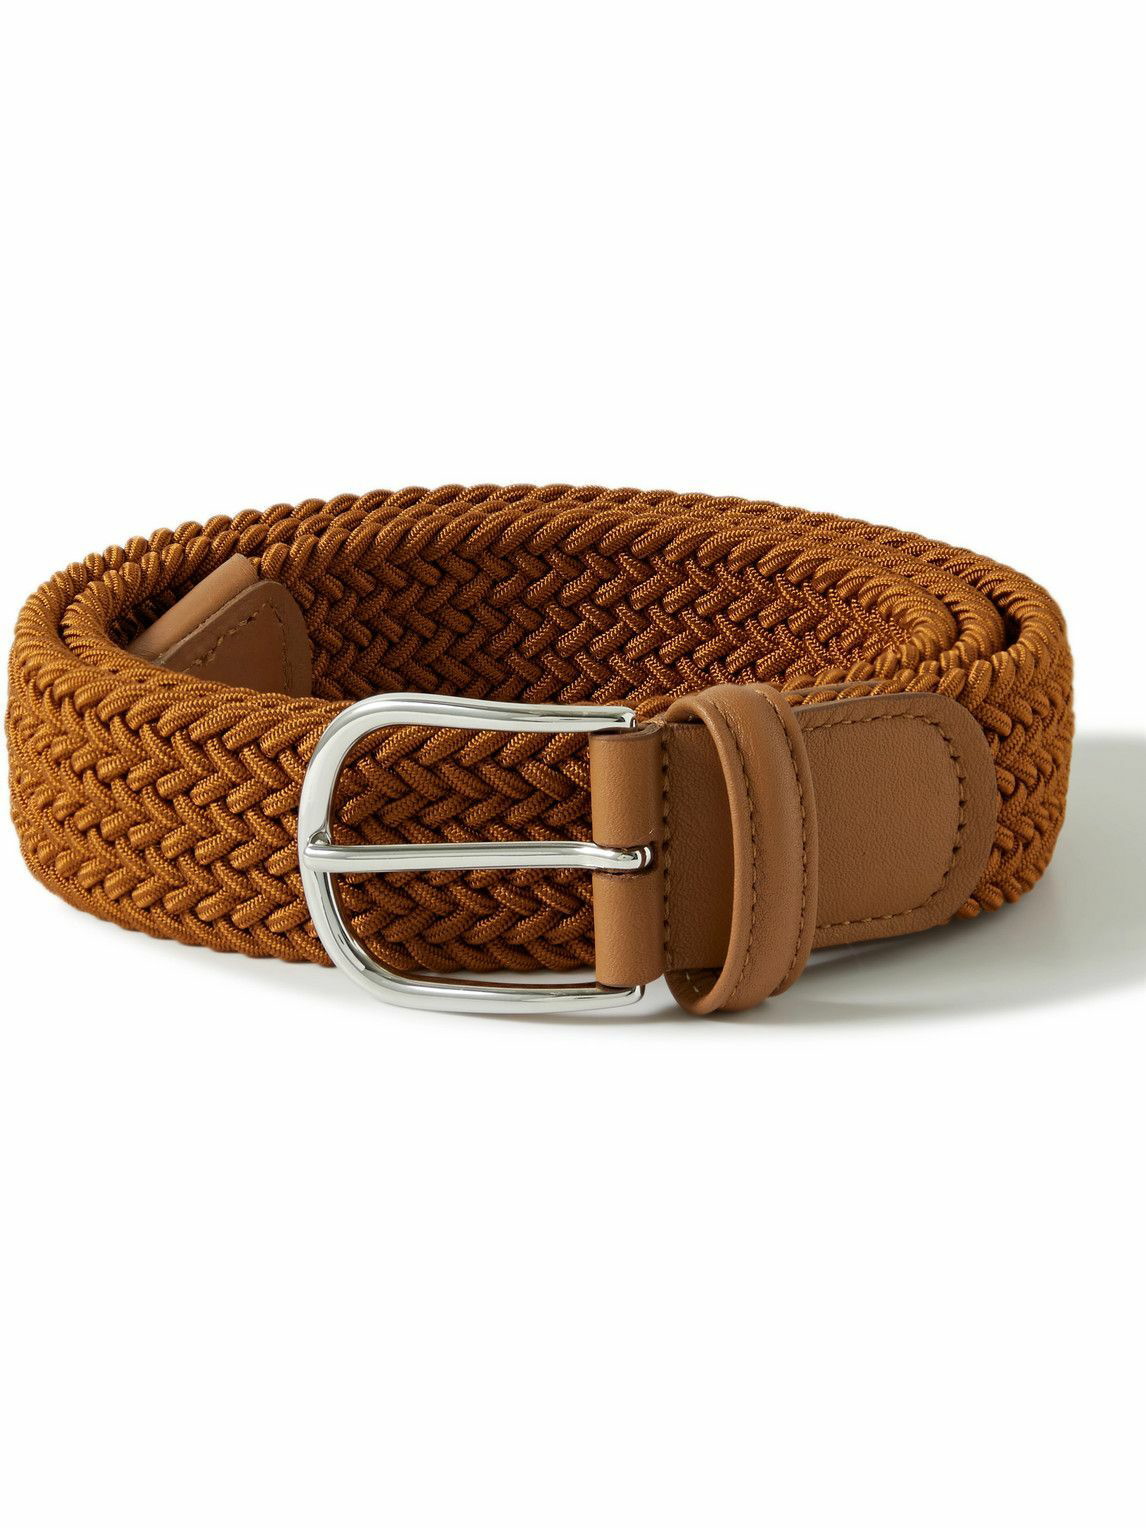 3cm Dark-Brown Leather Belt